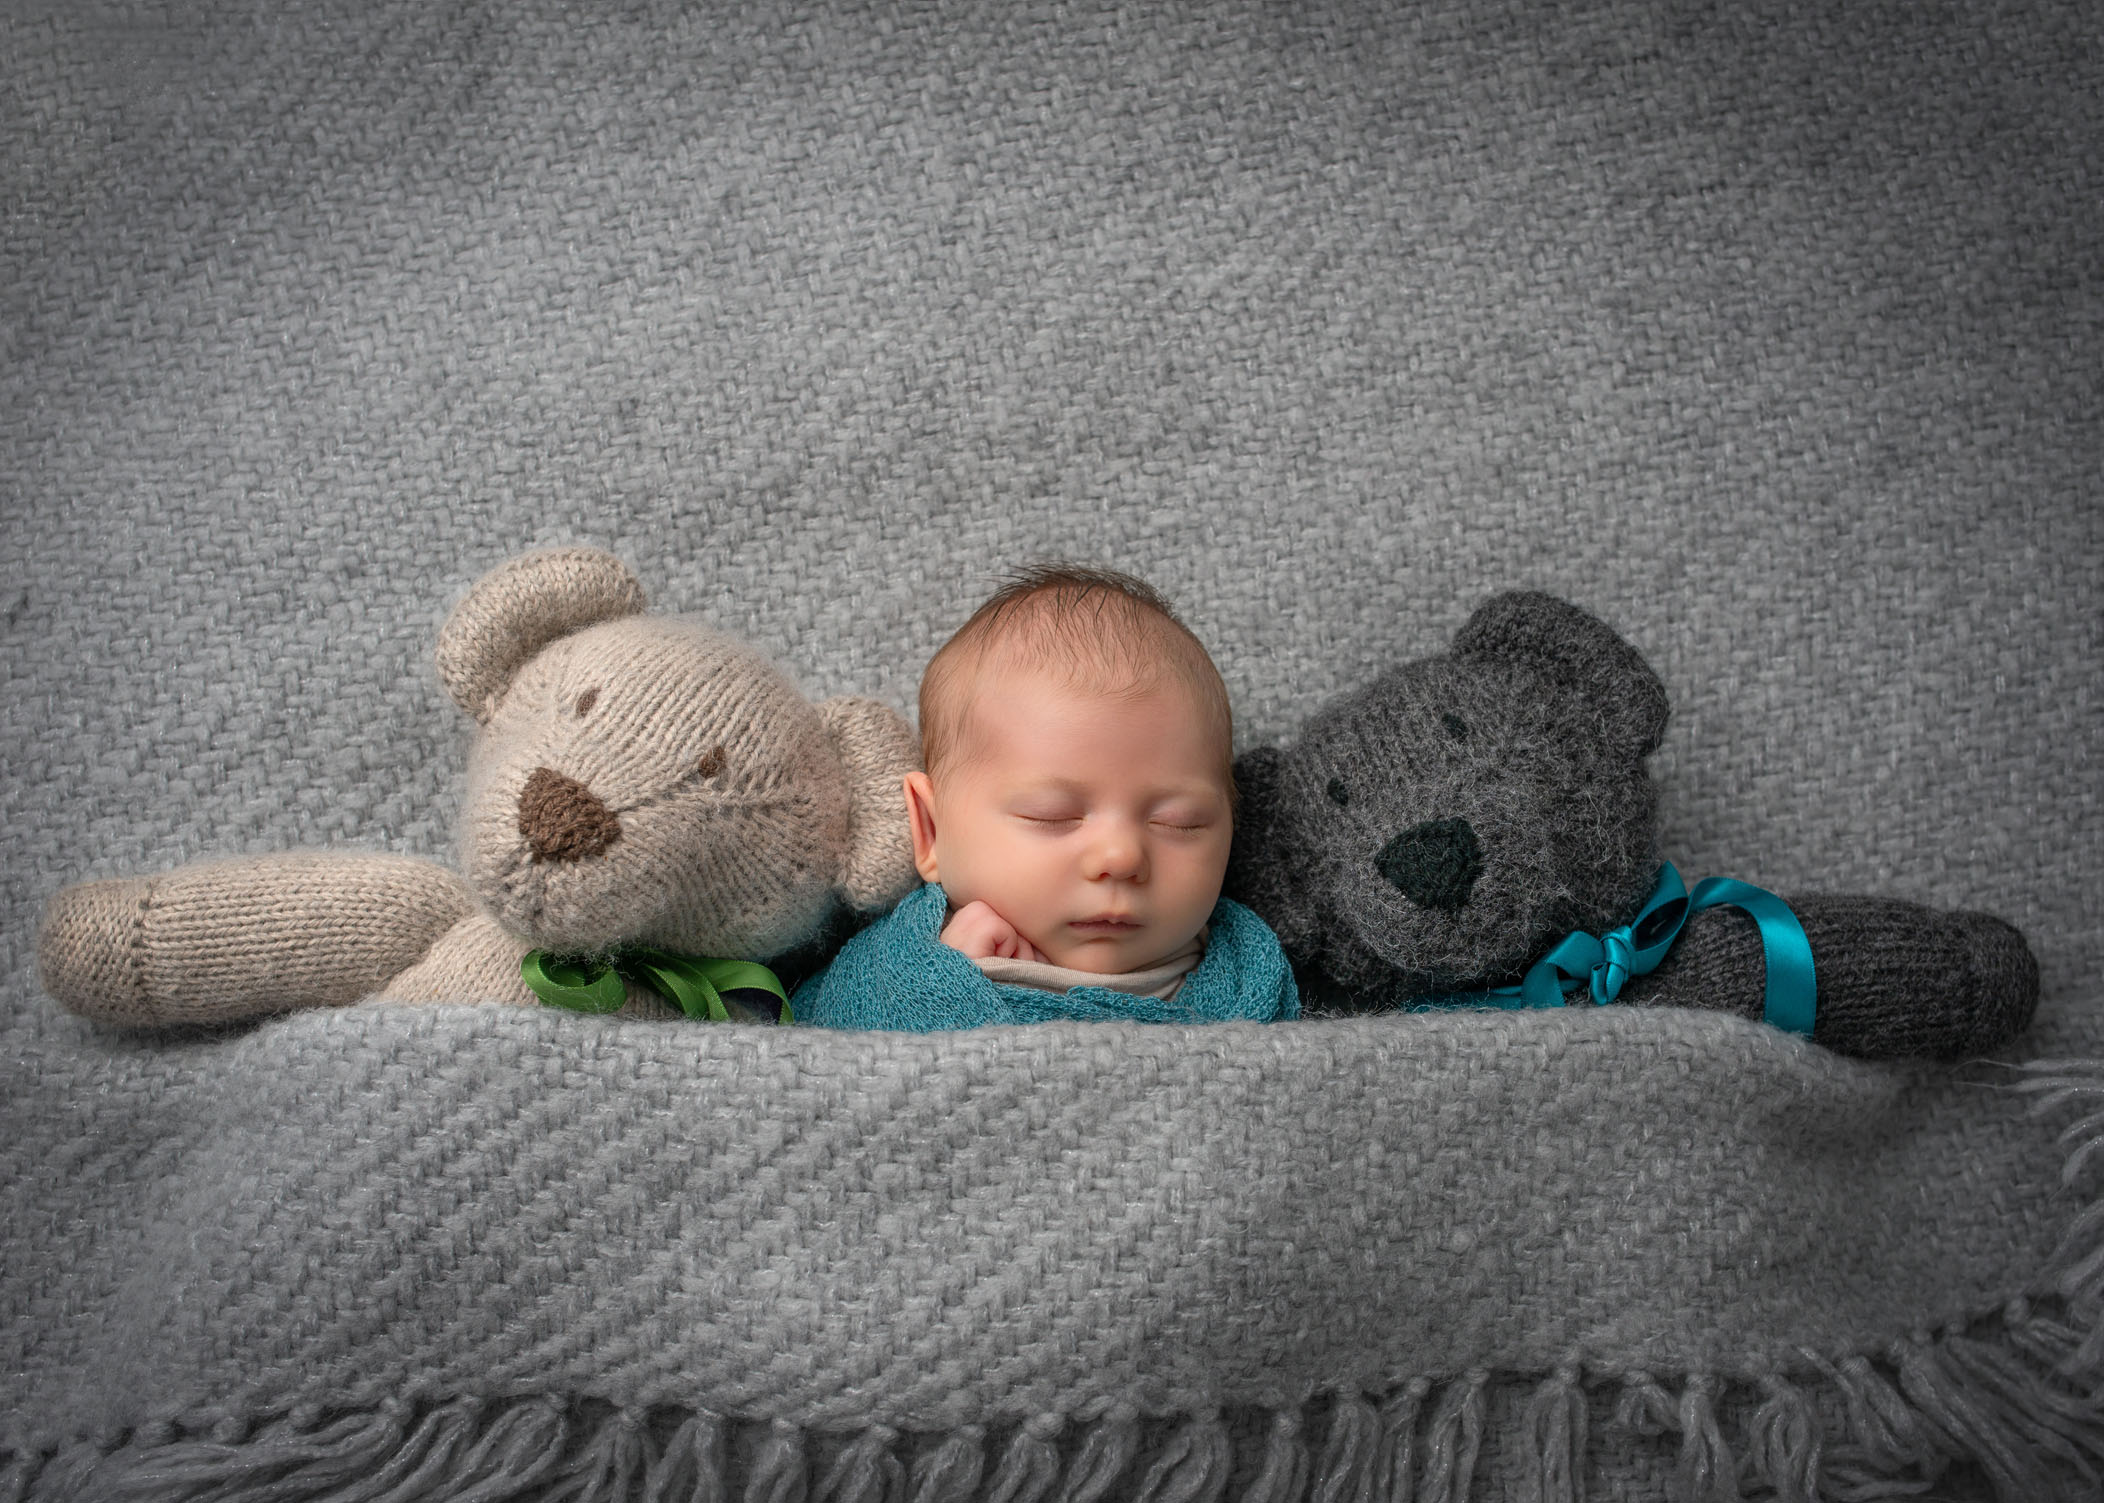 baby girl sleeping tucked in blanket with two stuffed teddy bears